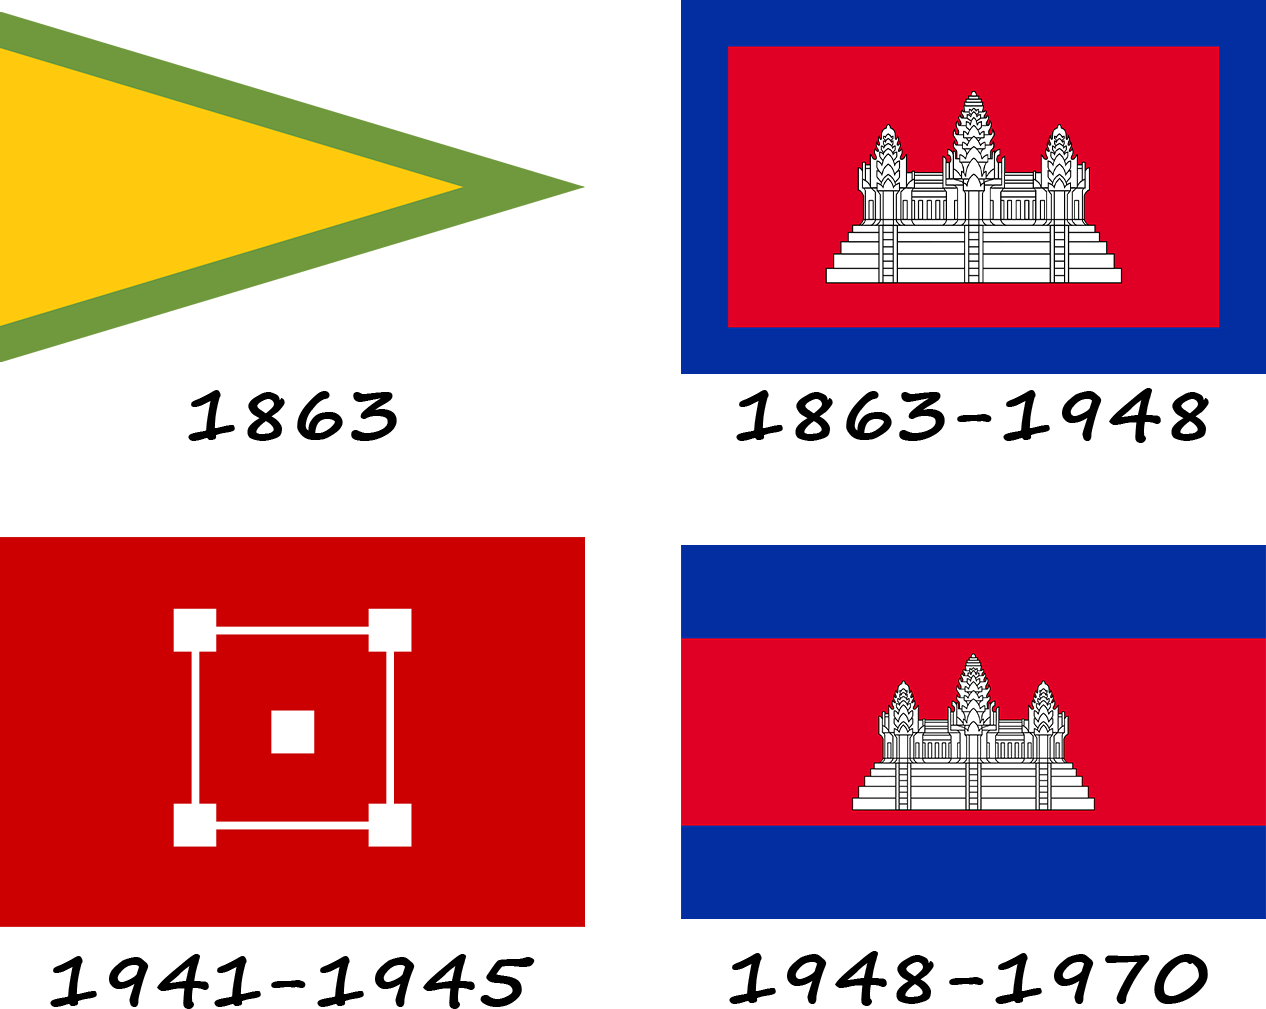 Histoire du drapeau du Cambodge. Comment le drapeau du Cambodge a-t-il évolué ?